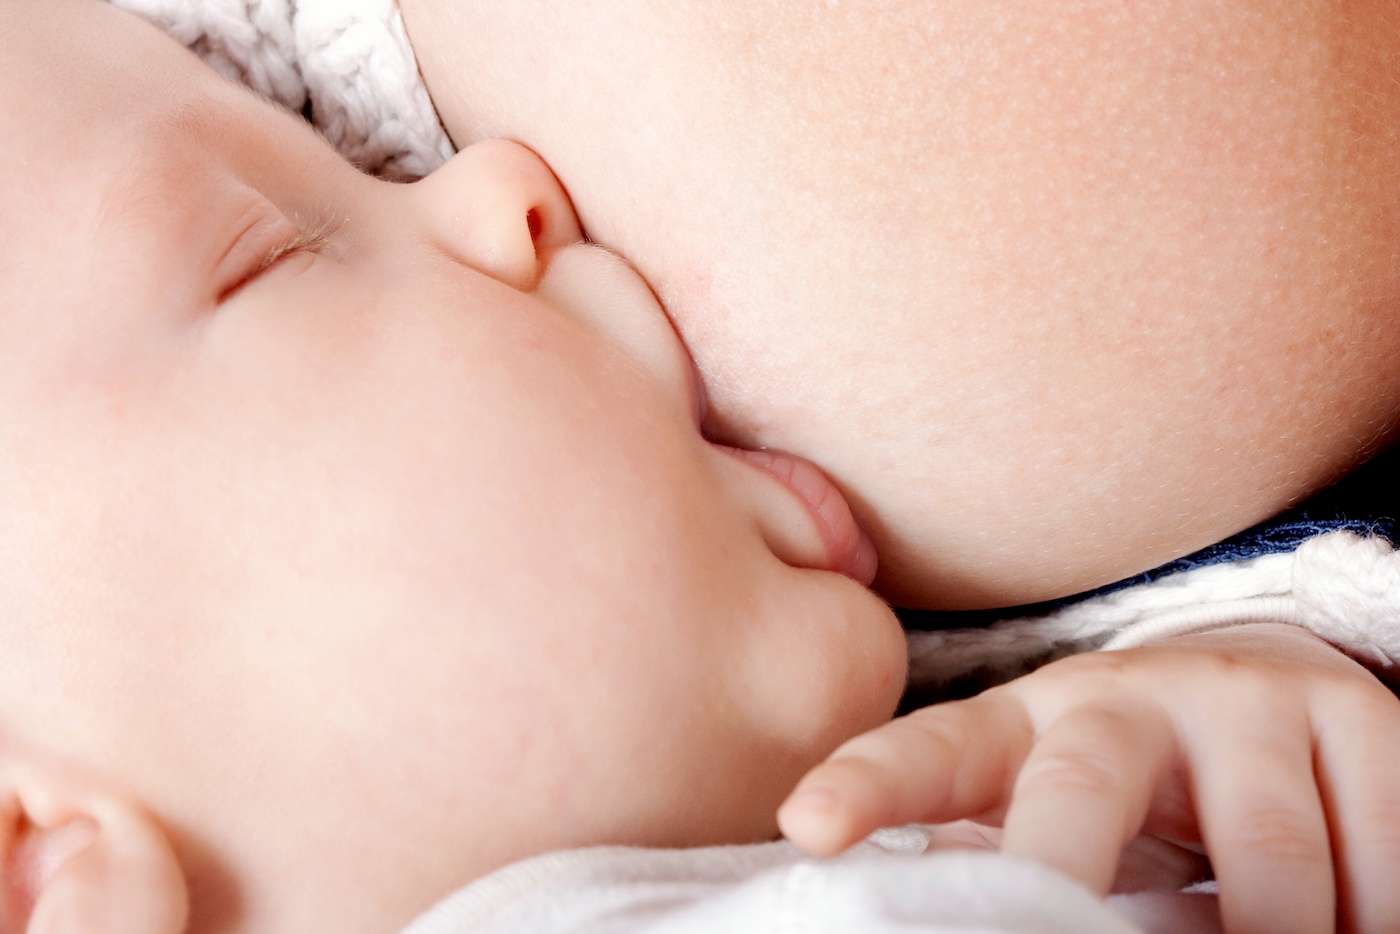 Le lait maternel contient des molécules aux vertus anti-inflammatoires capables de combattre une infection et d’aider la cicatrisation. © shutterstock.com